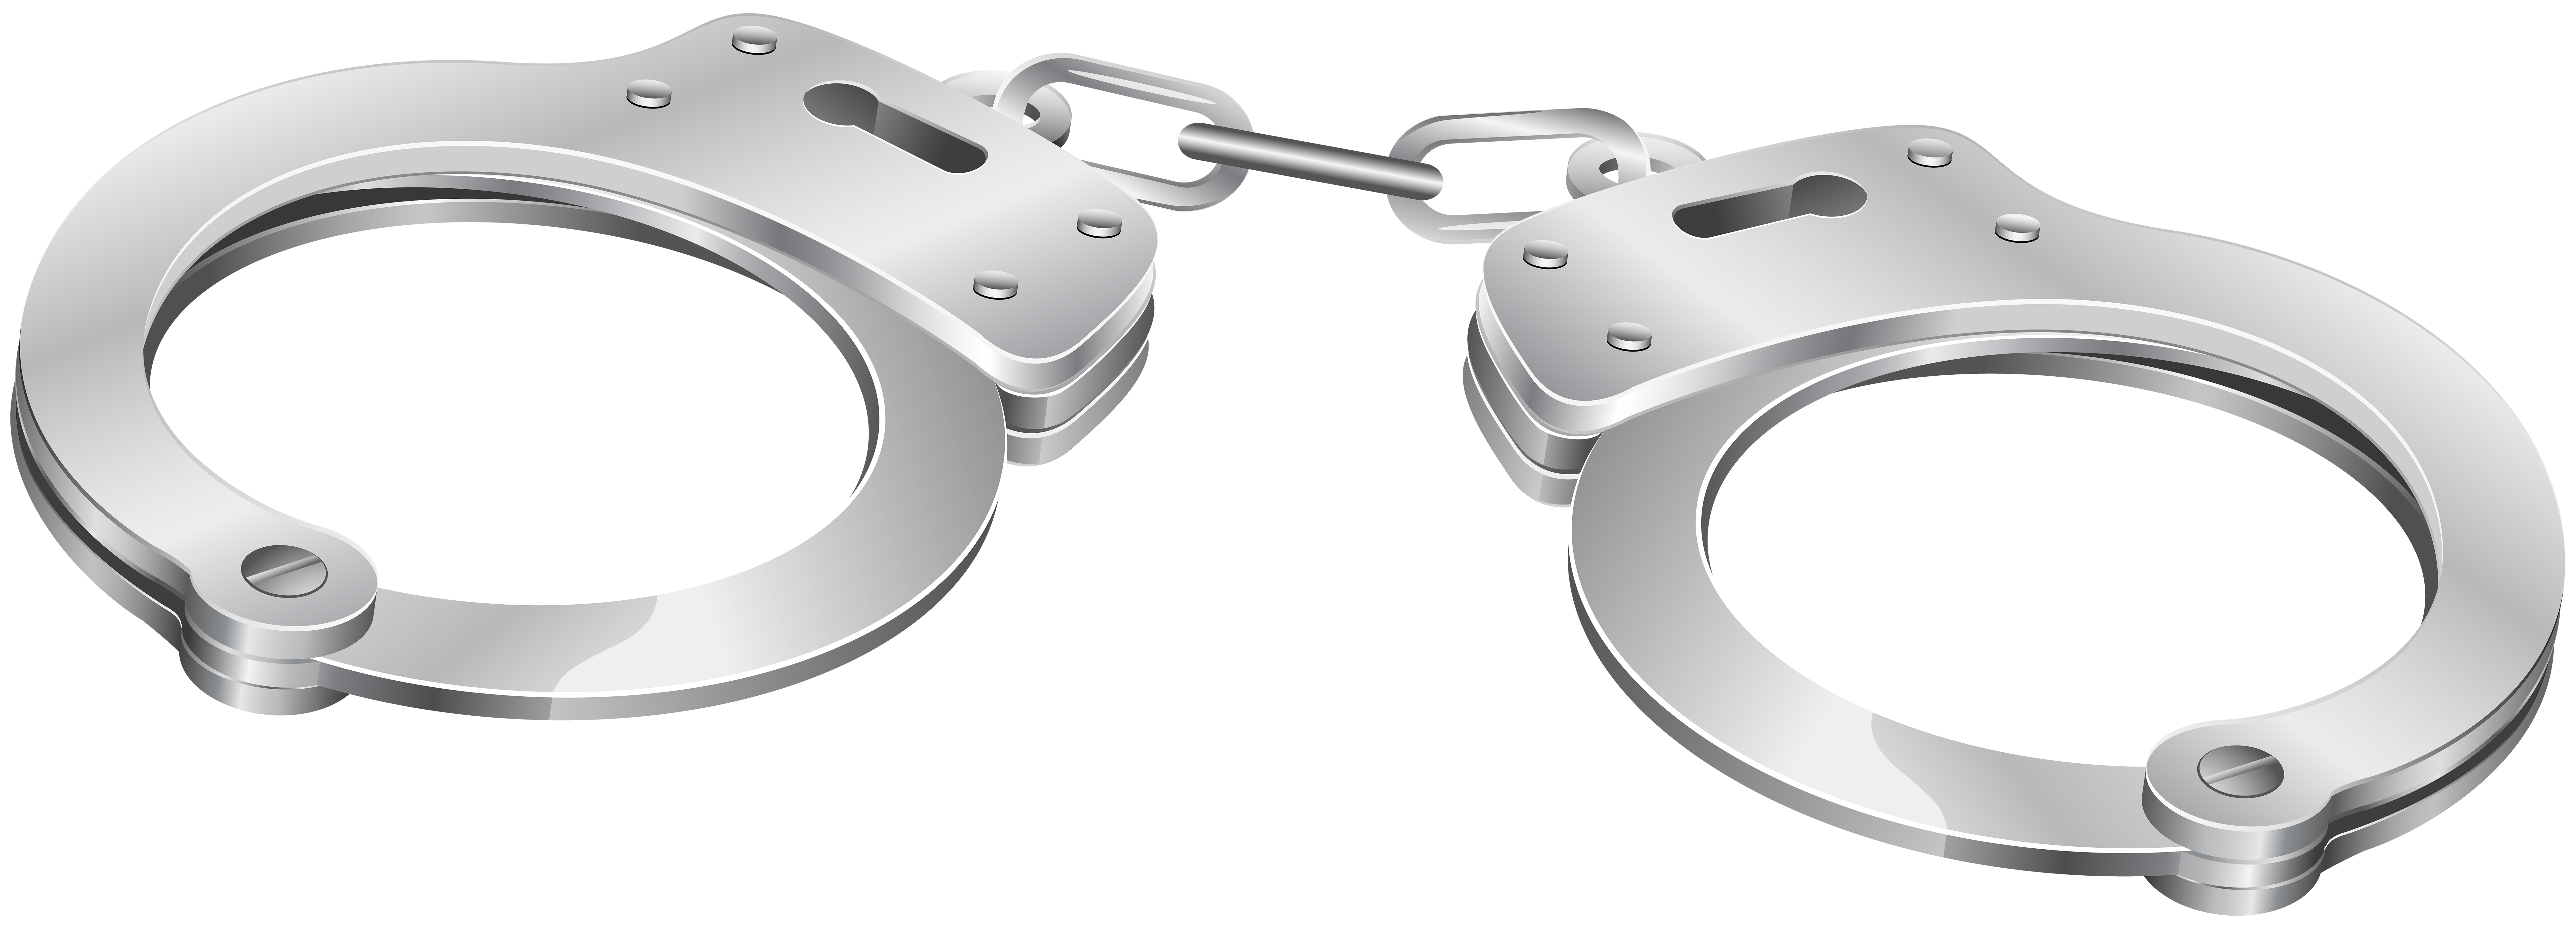 handcuffs clipart transparent